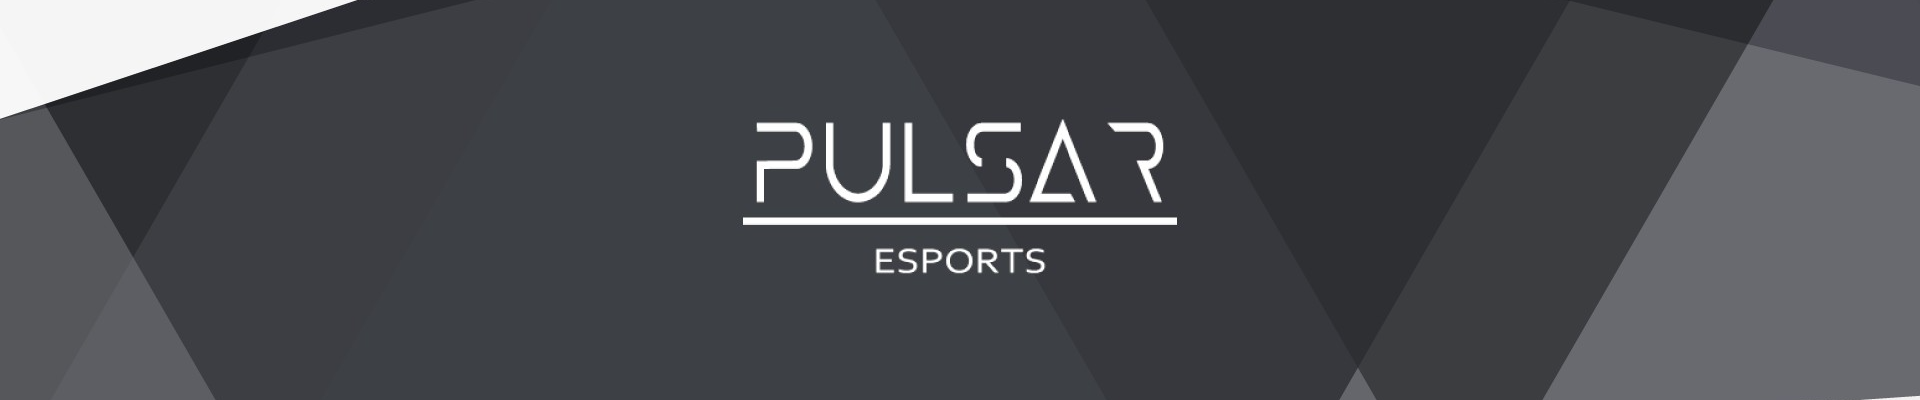 Pulsar Esports